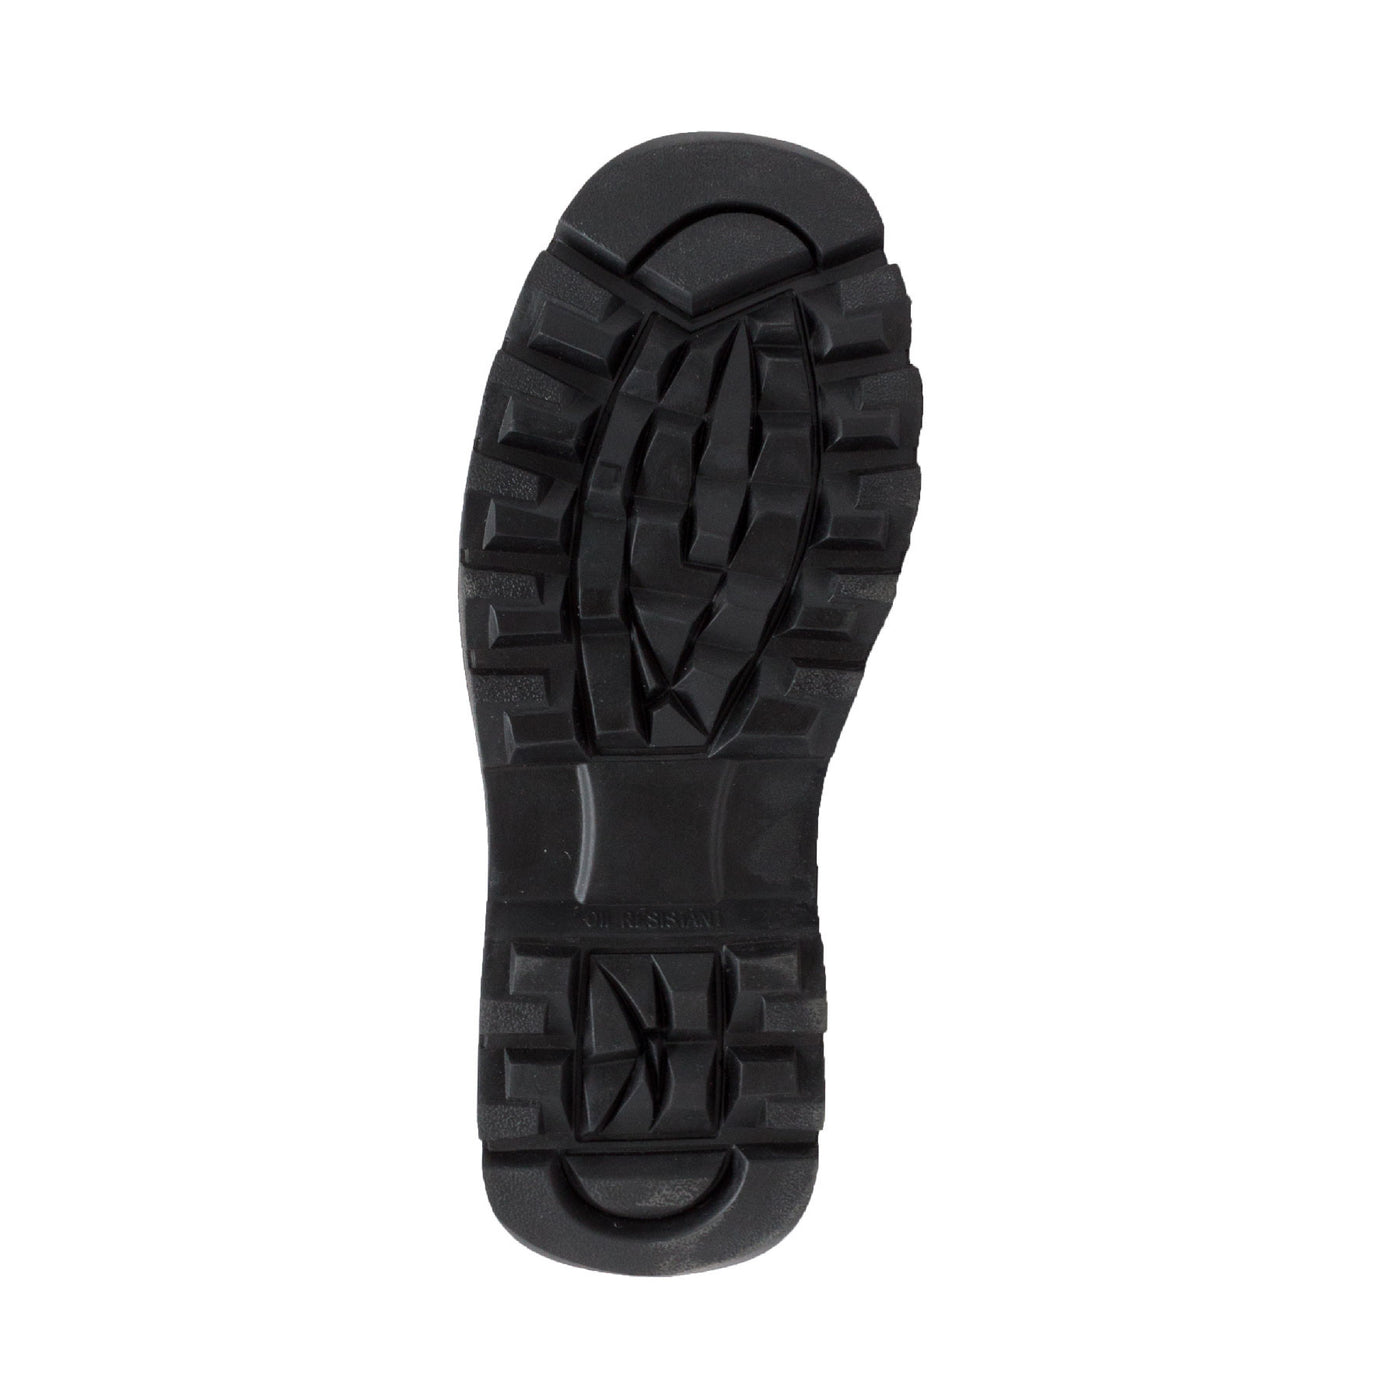 Men's 6" Black Steel Toe Hiker - 1980 - Shop Genuine Leather men & women's boots online | AdTecFootWear